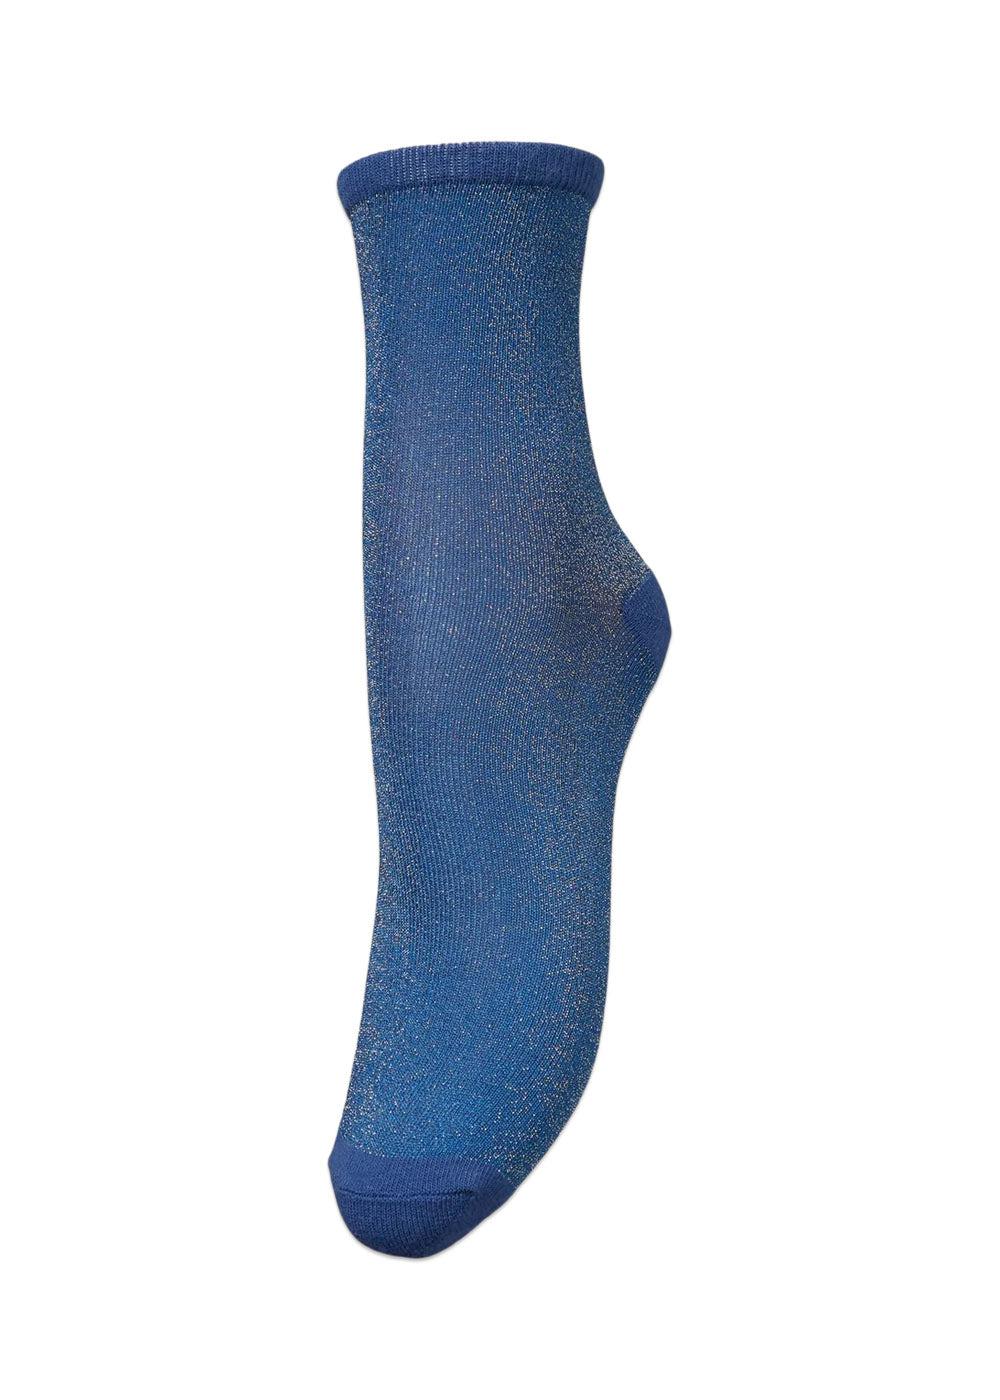 BeckSöndergaards Dina Solid Sock - Denim Blue. Køb socks/stockings her.